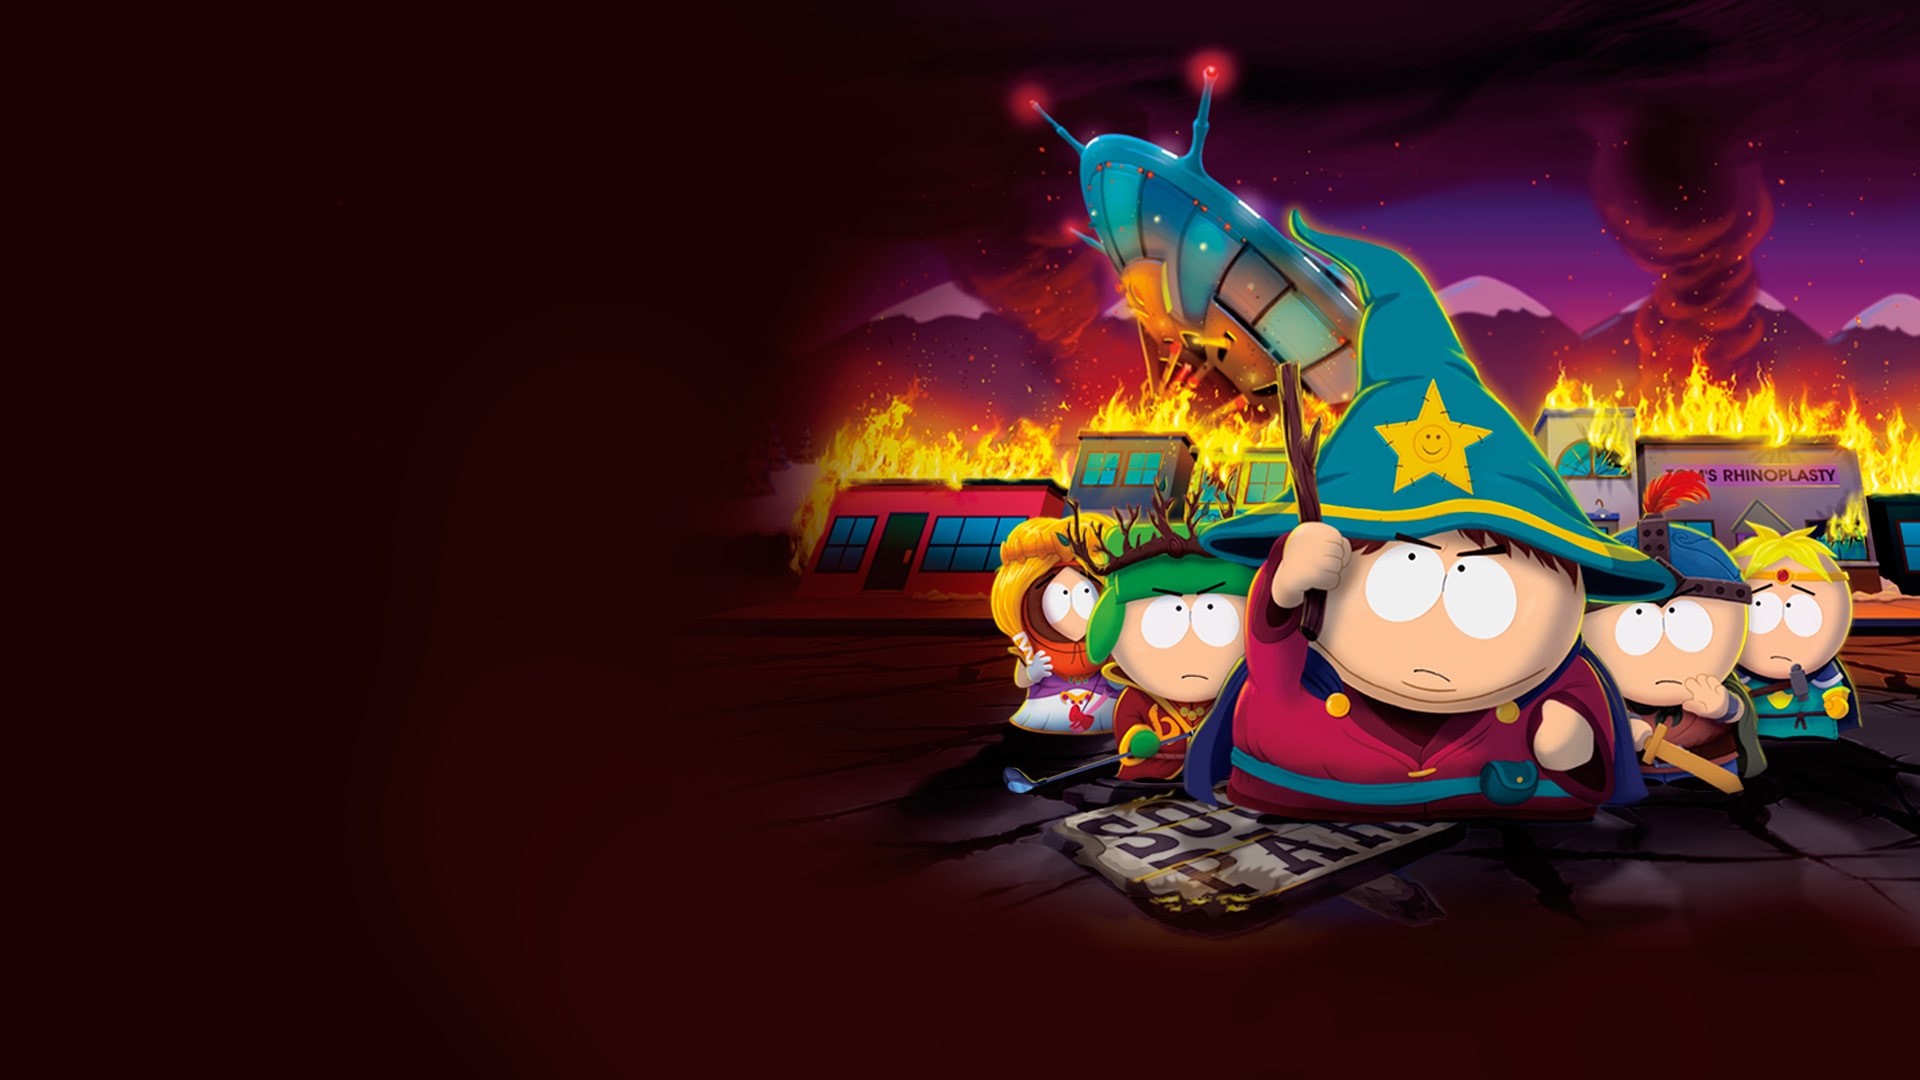 South Park™: La Vara de la Verdad™